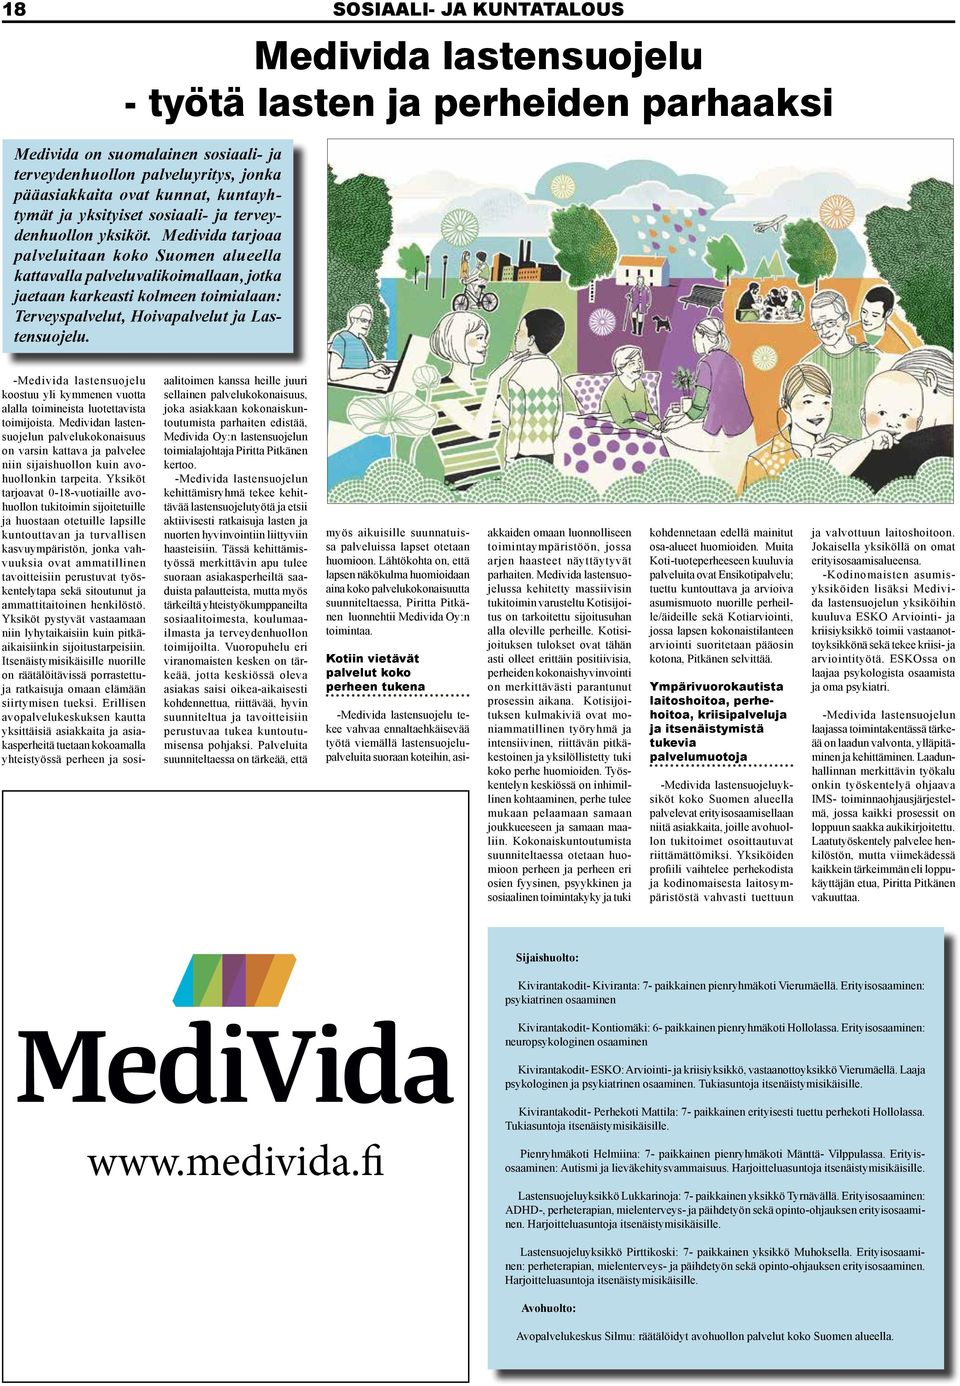 Medivida tarjoaa palveluitaan koko Suomen alueella kattavalla palveluvalikoimallaan, jotka jaetaan karkeasti kolmeen toimialaan: Terveyspalvelut, Hoivapalvelut ja Lastensuojelu.